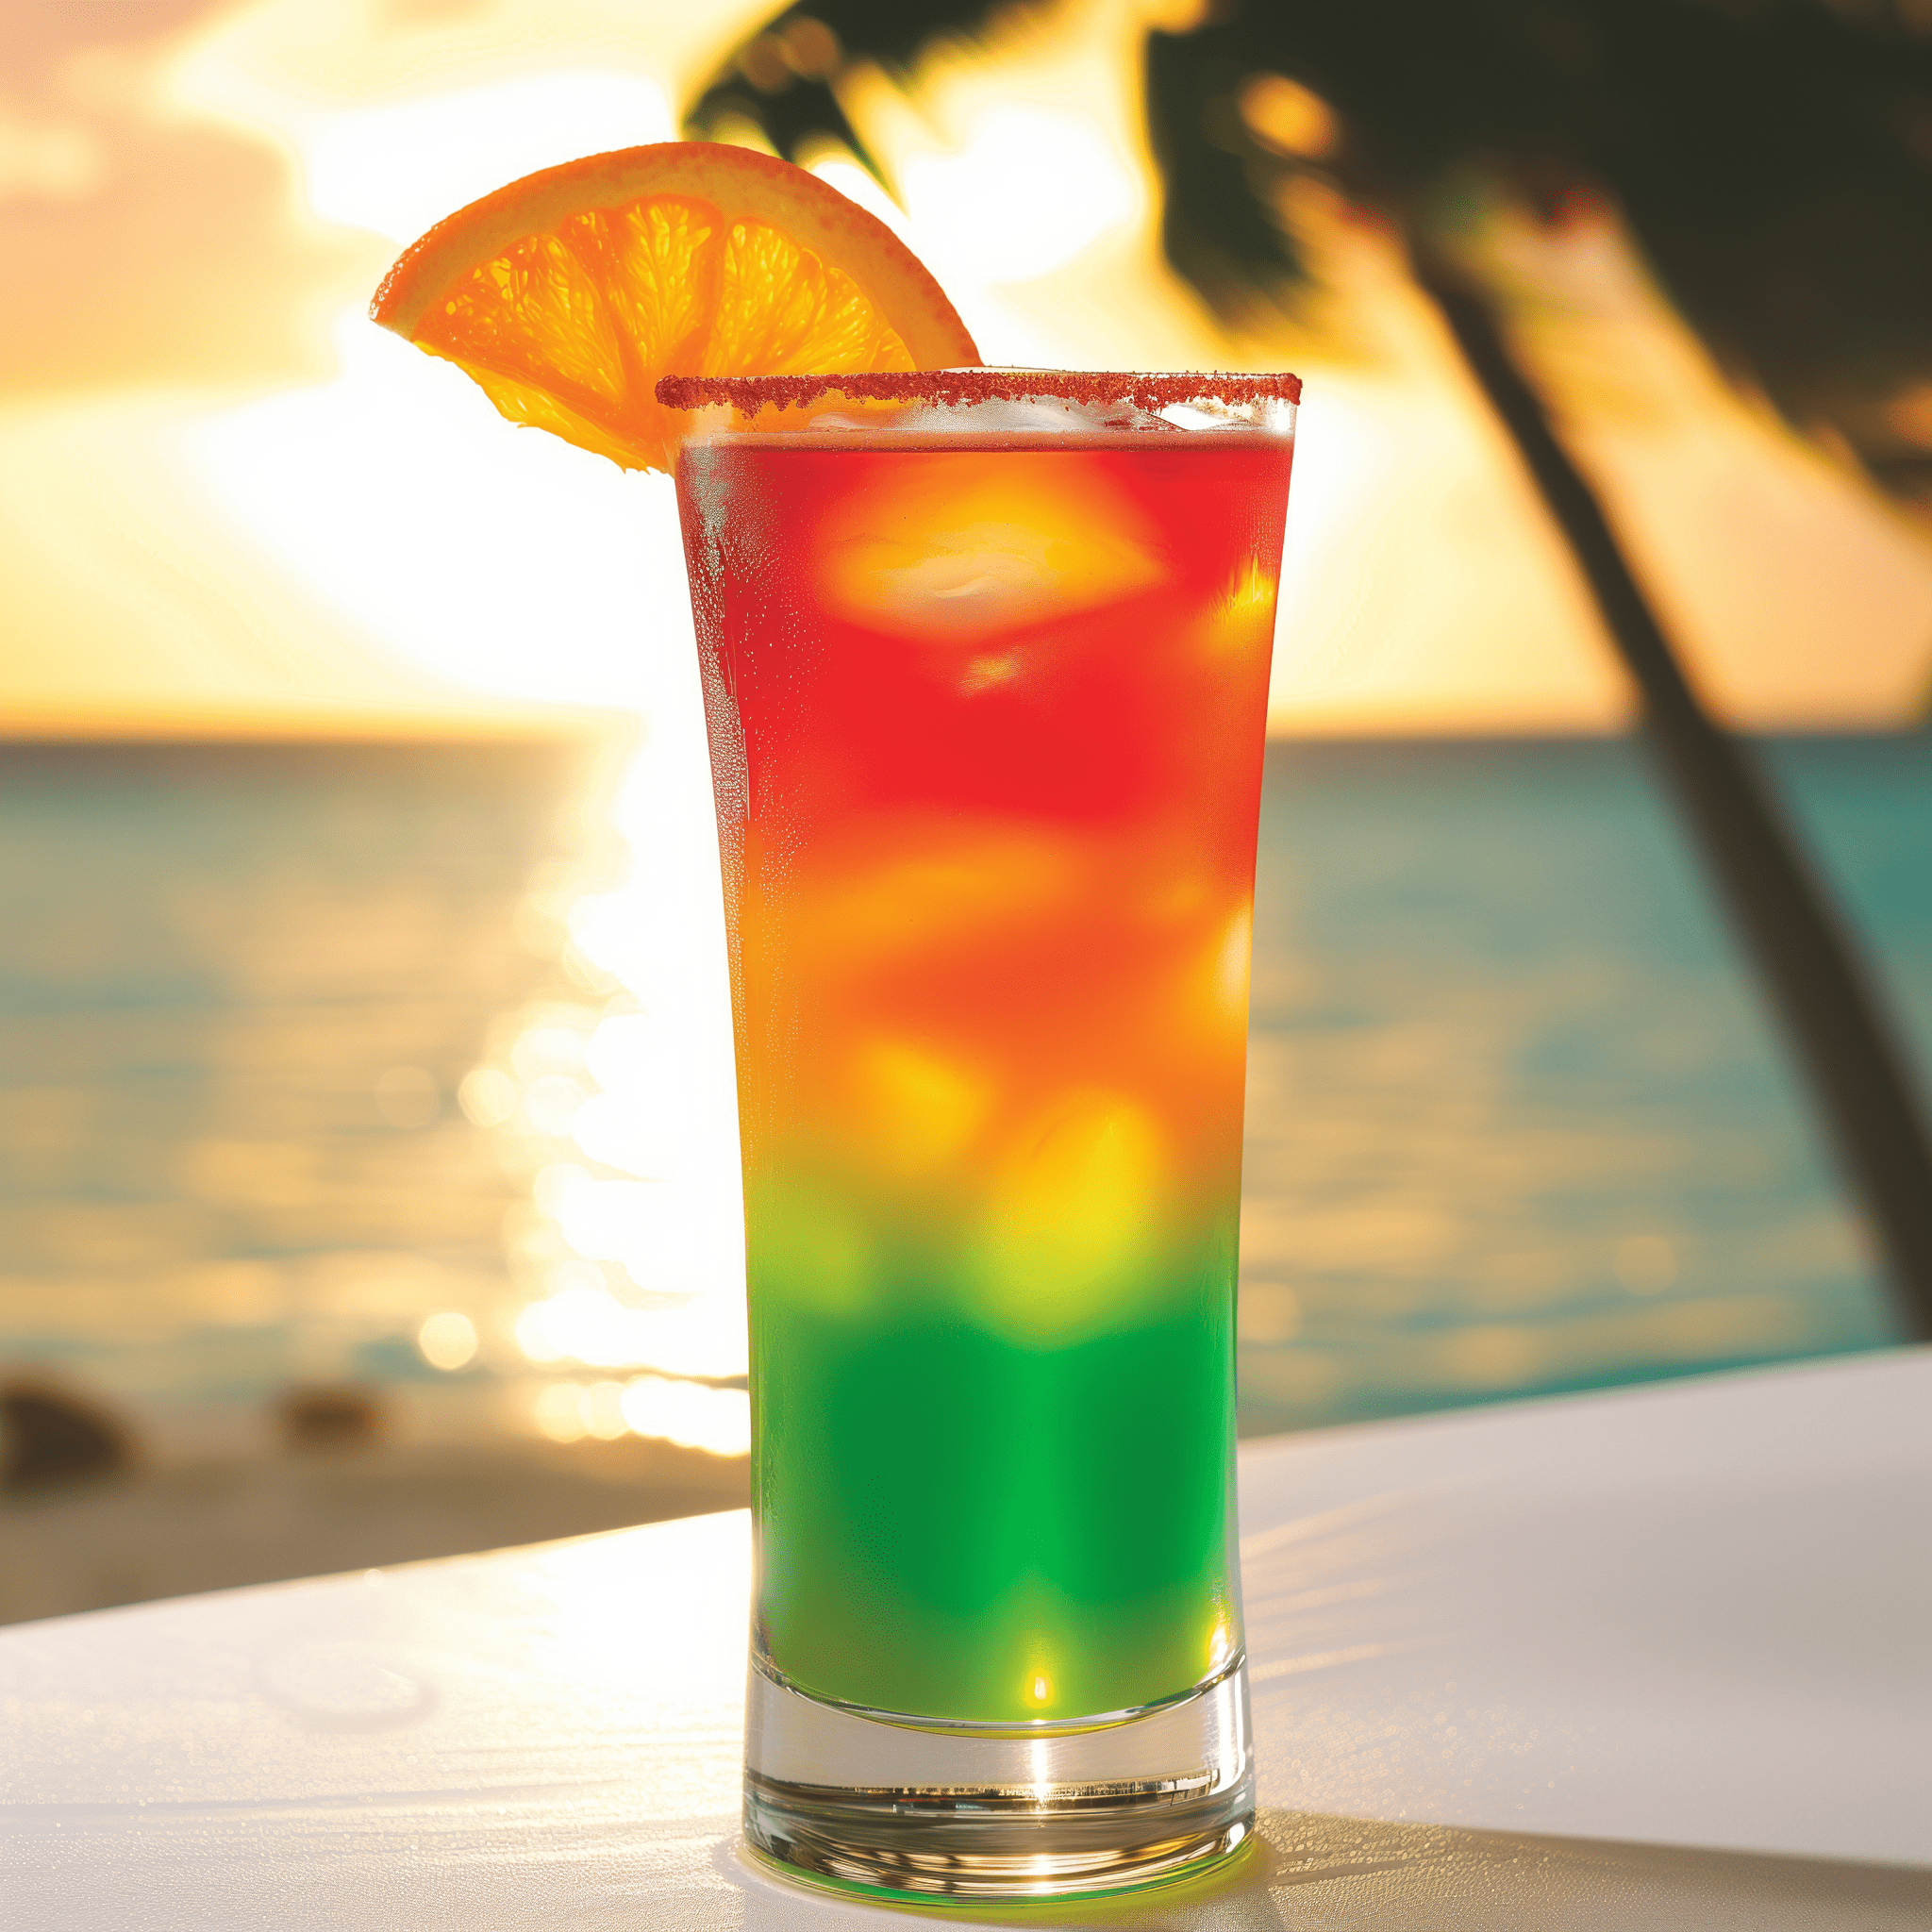 Key West Cooler Cóctel Receta - El Key West Cooler ofrece un perfil de sabor dulce y afrutado con un toque tropical, gracias al ron de coco y al licor de melón. Es una bebida ligera y refrescante con un sutil toque de vodka.